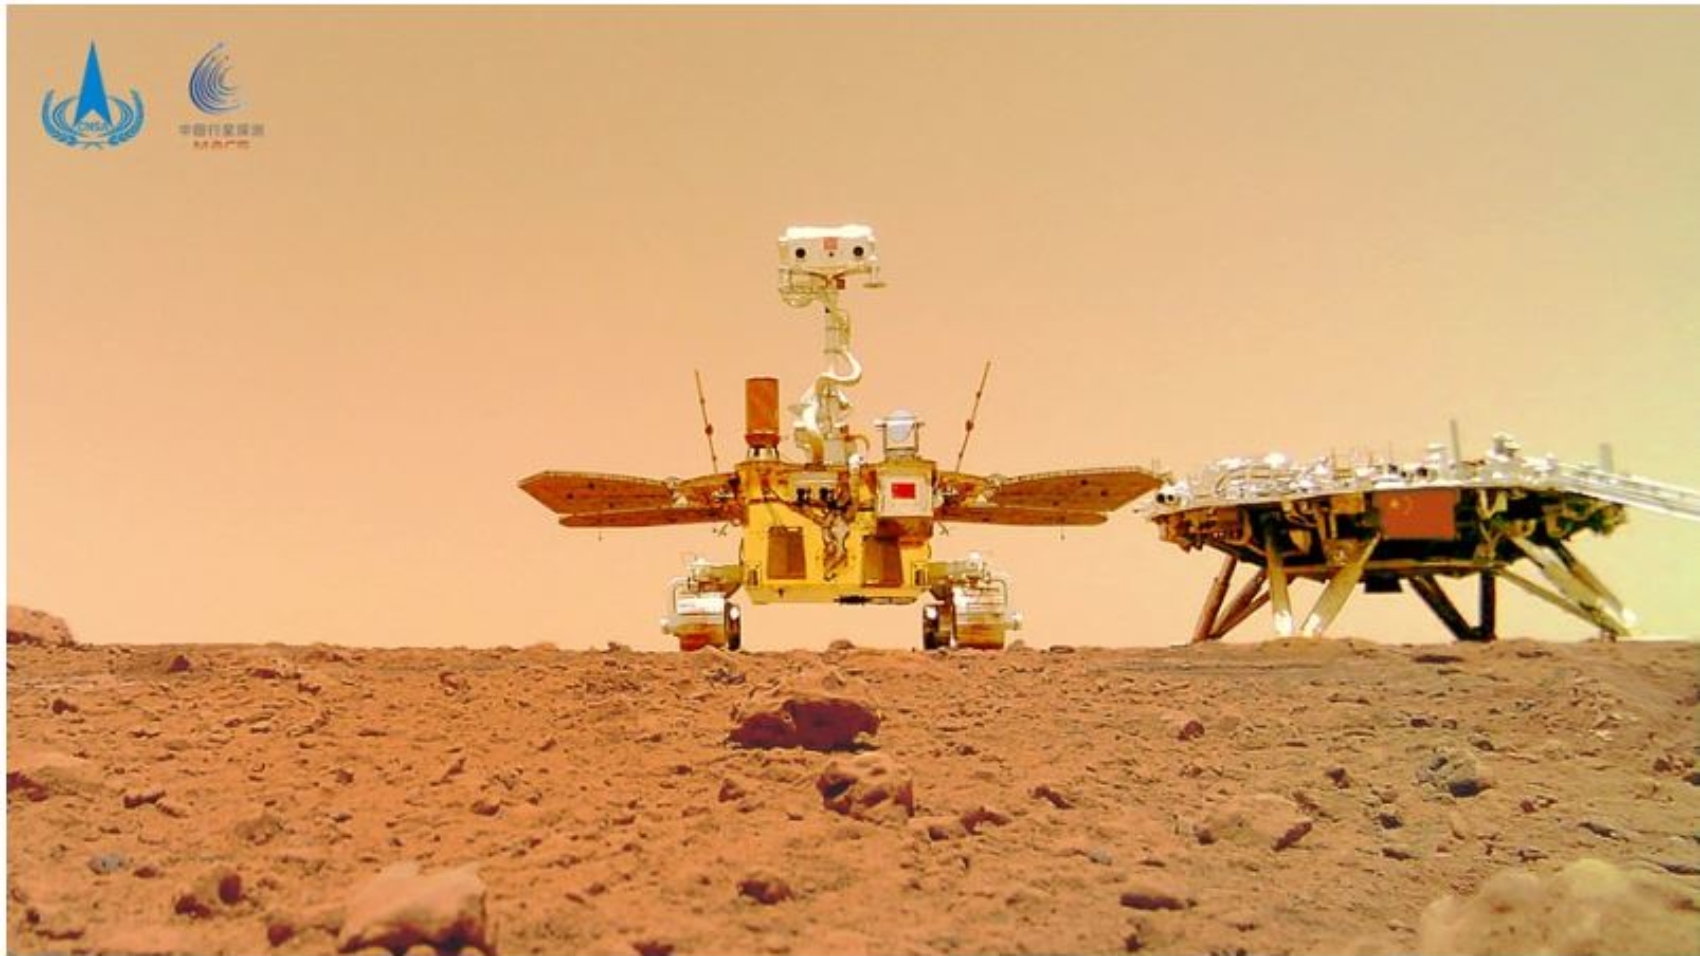 Zhurong Mars rover (Image credit CNSA)